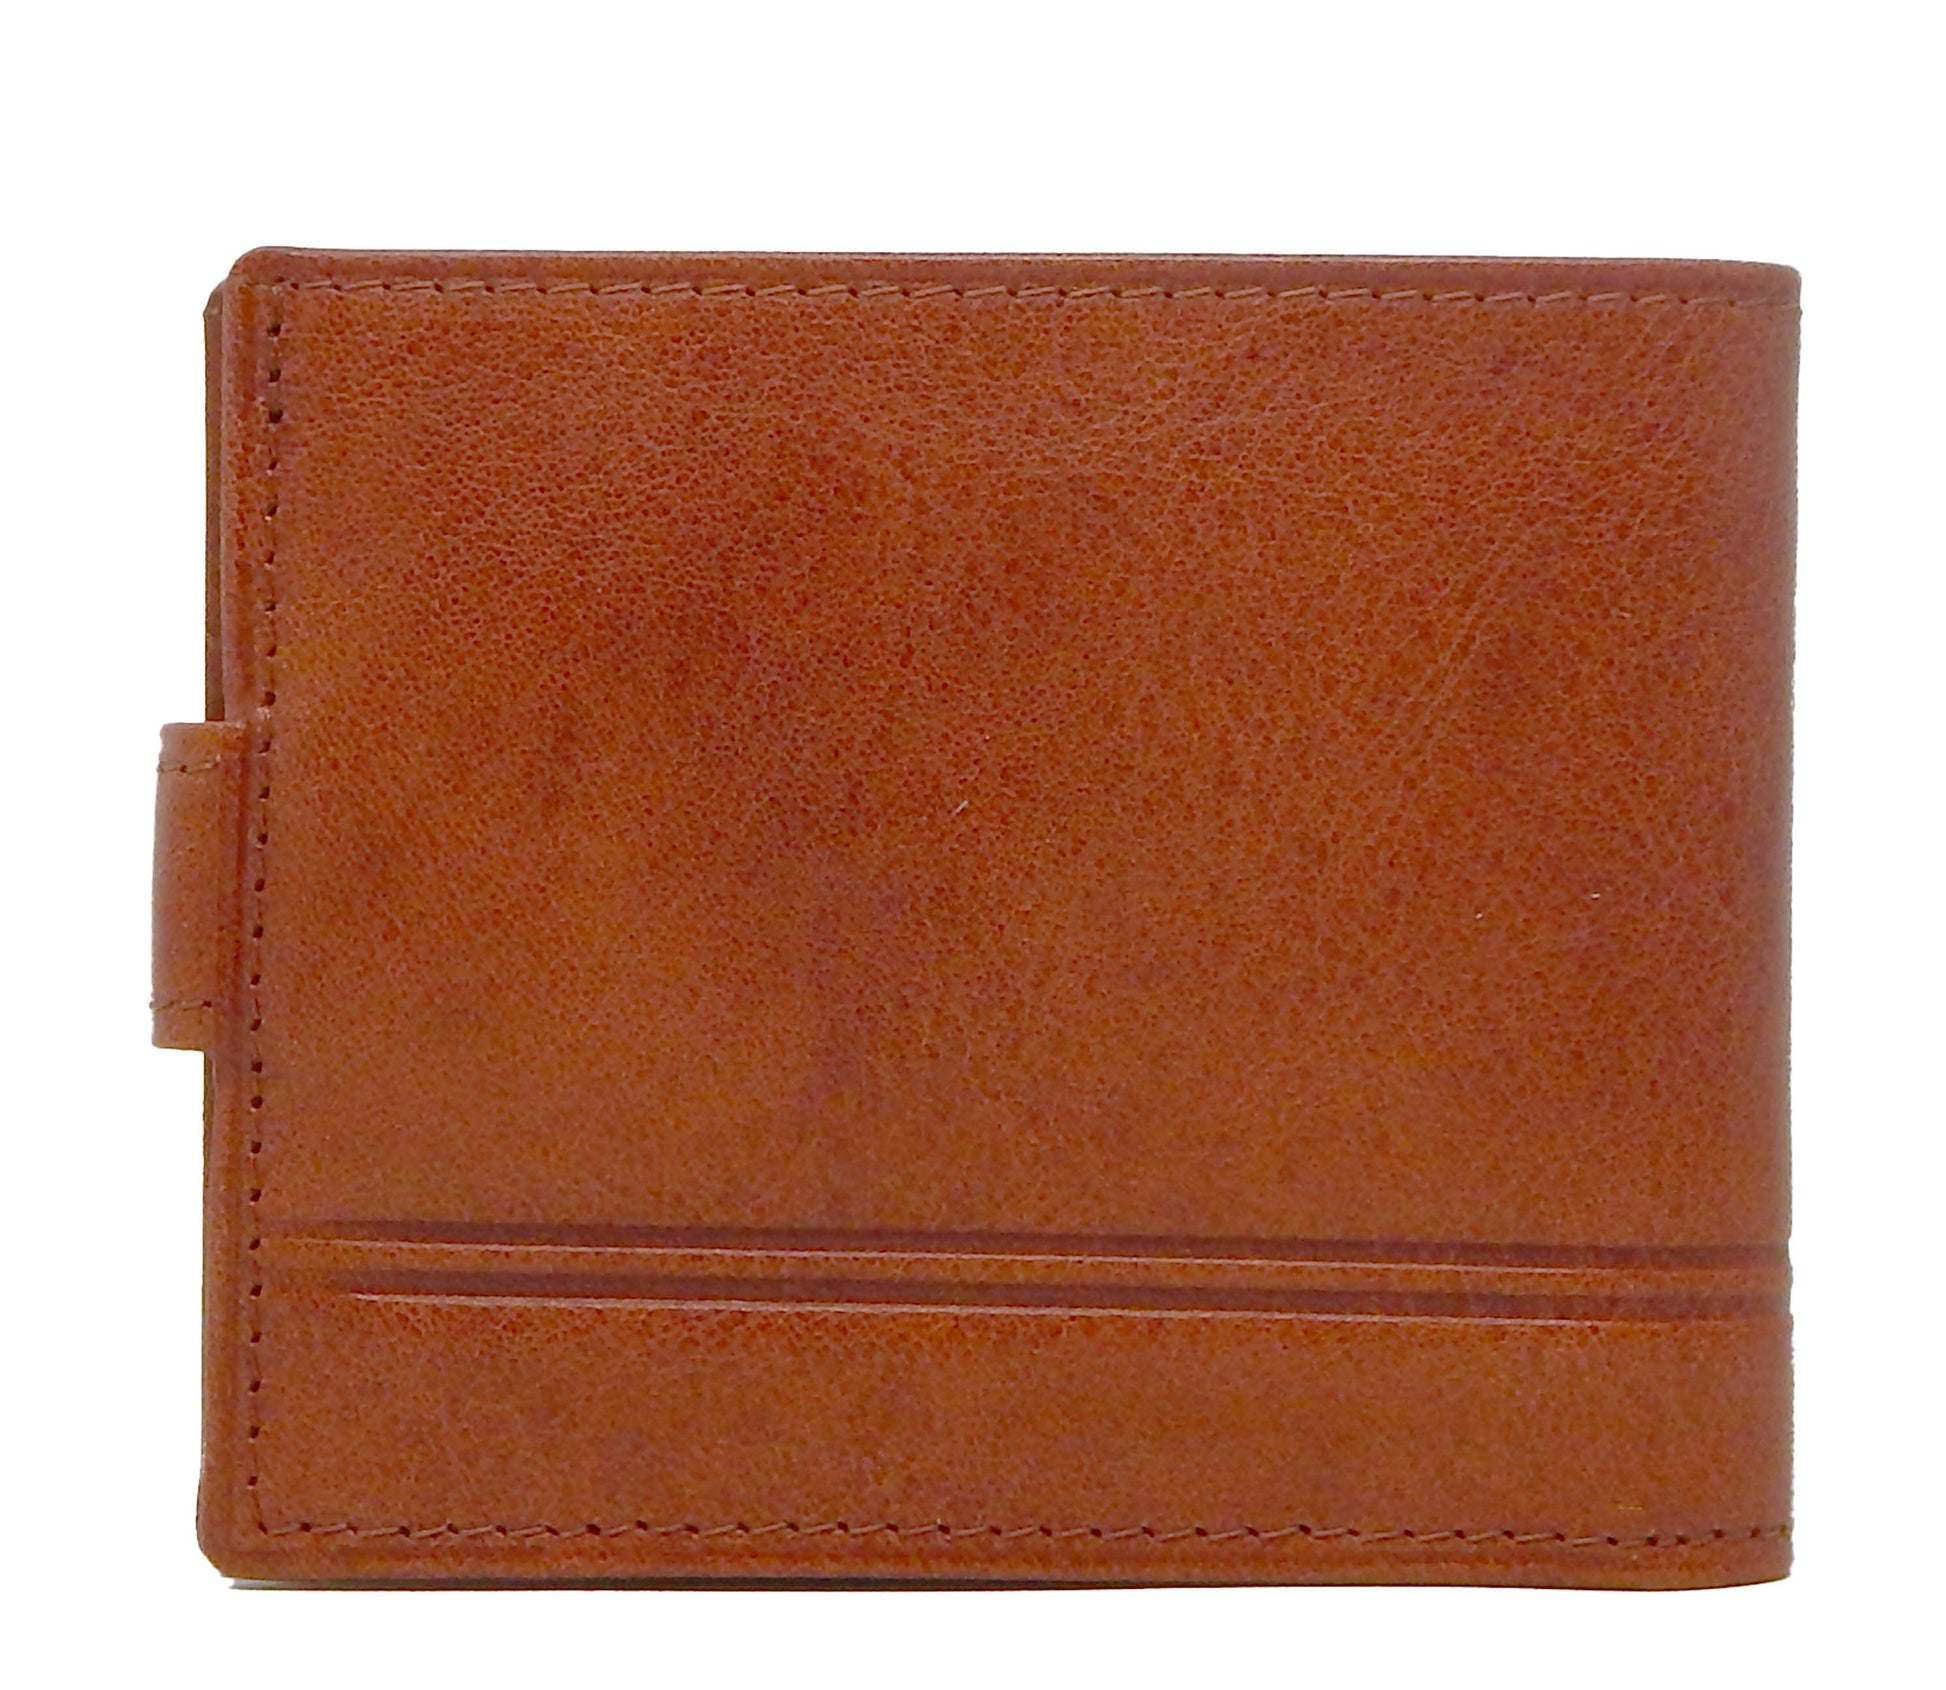 Cavalinho Men's Bifold Leather Wallet - SaddleBrown - 28160516.13.99_3